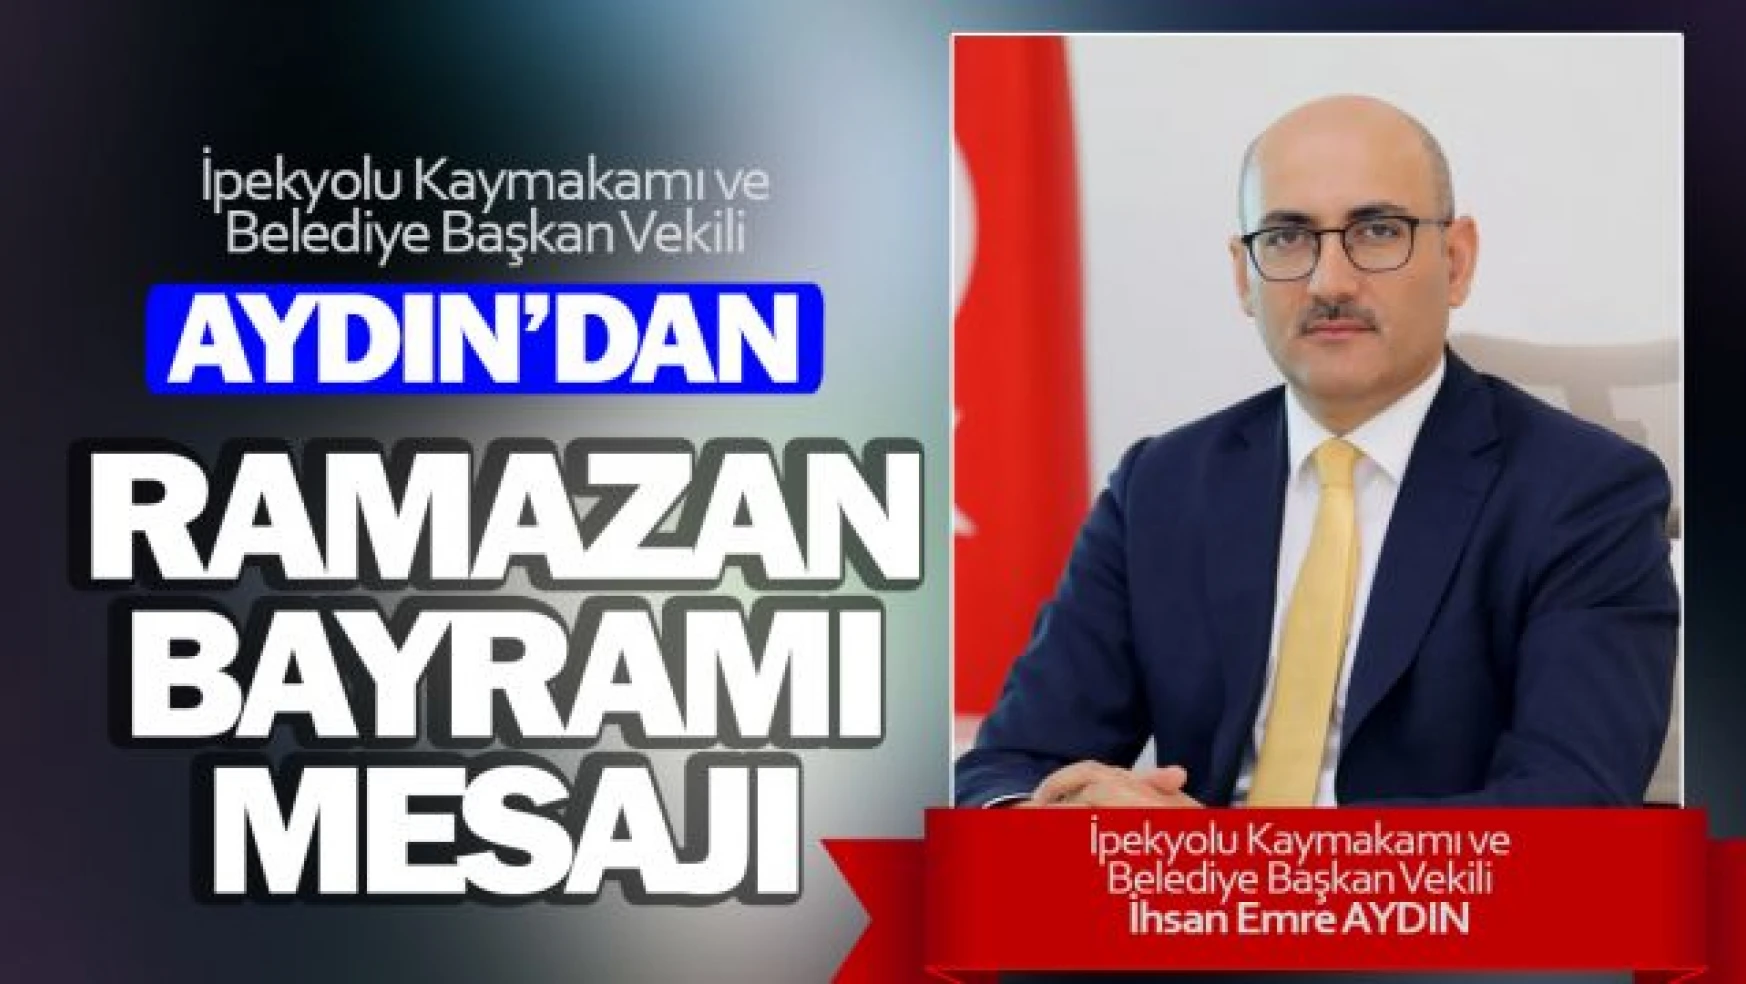 Başkan Vekili Aydın'dan Ramazan Bayramı Mesajı